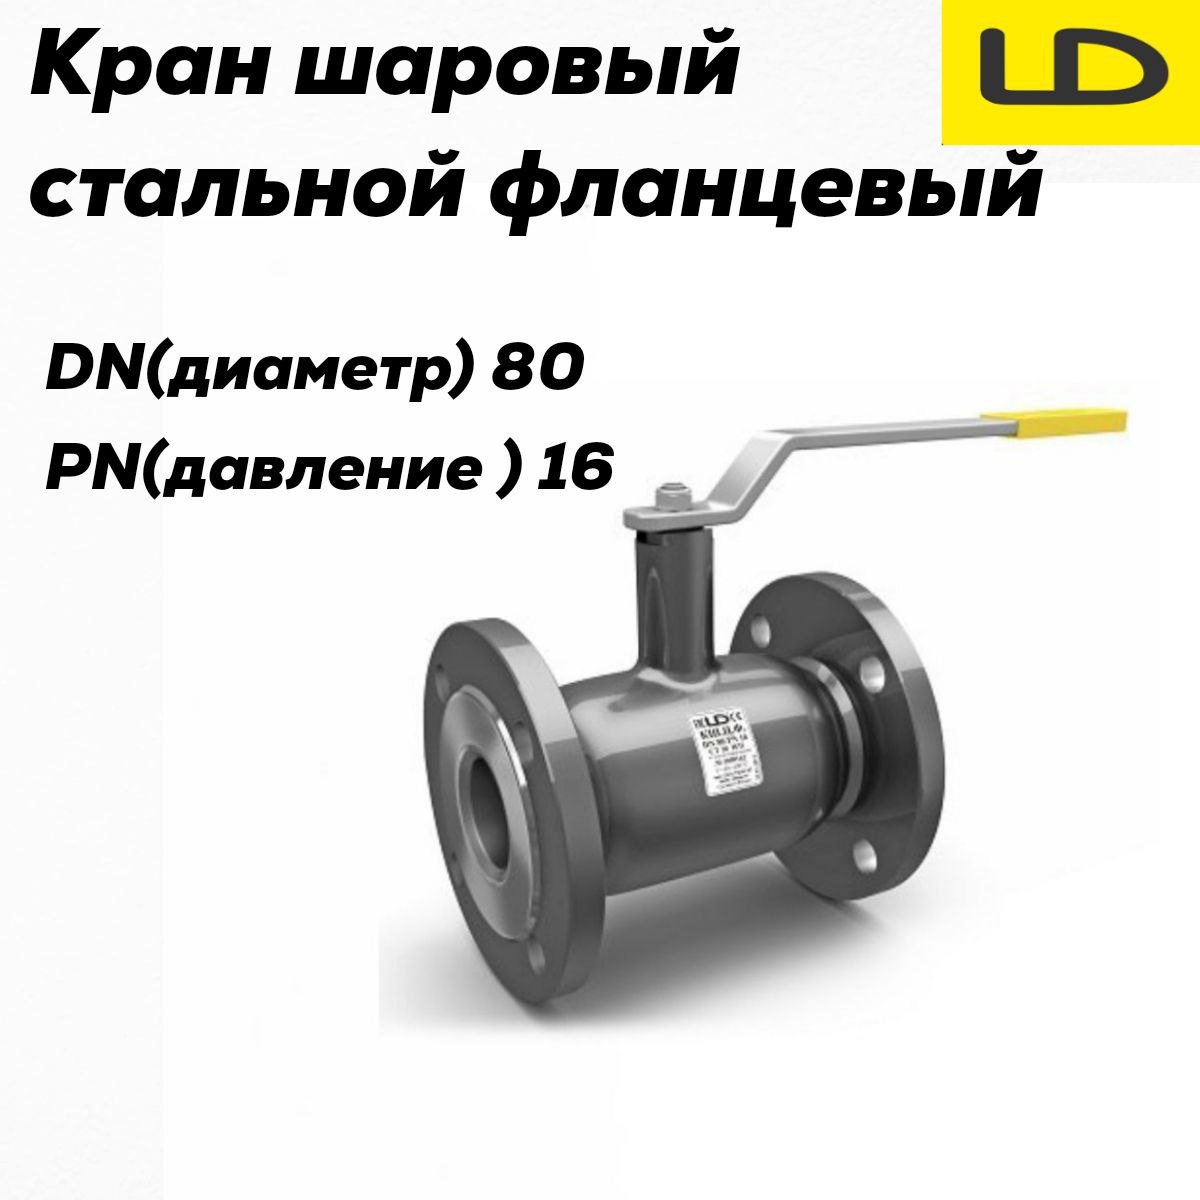 Кран шаровой стальной фланцевый КШЦФ DN 80 PN16 стандарт